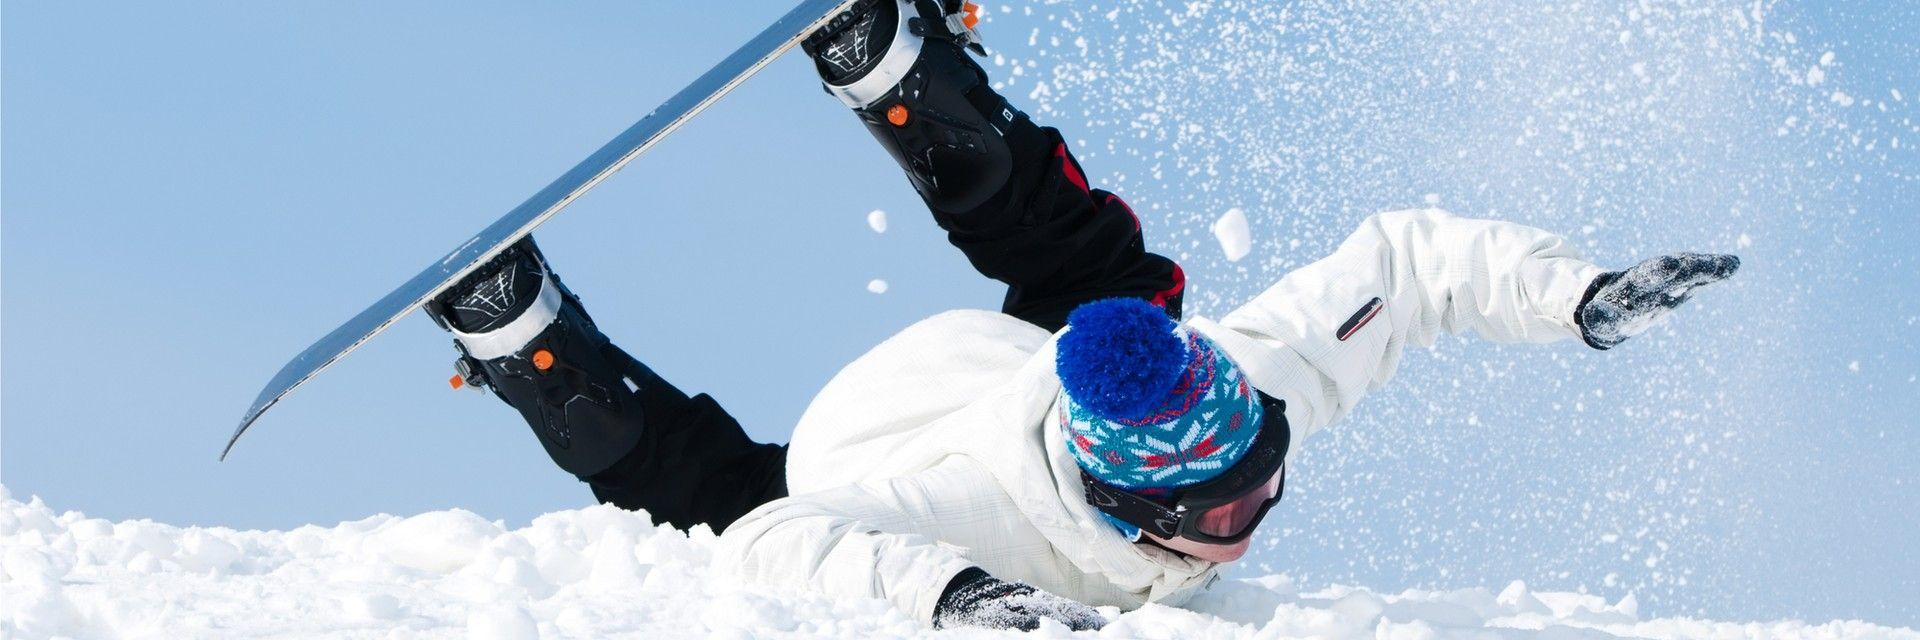 Snowboarding-Injuries